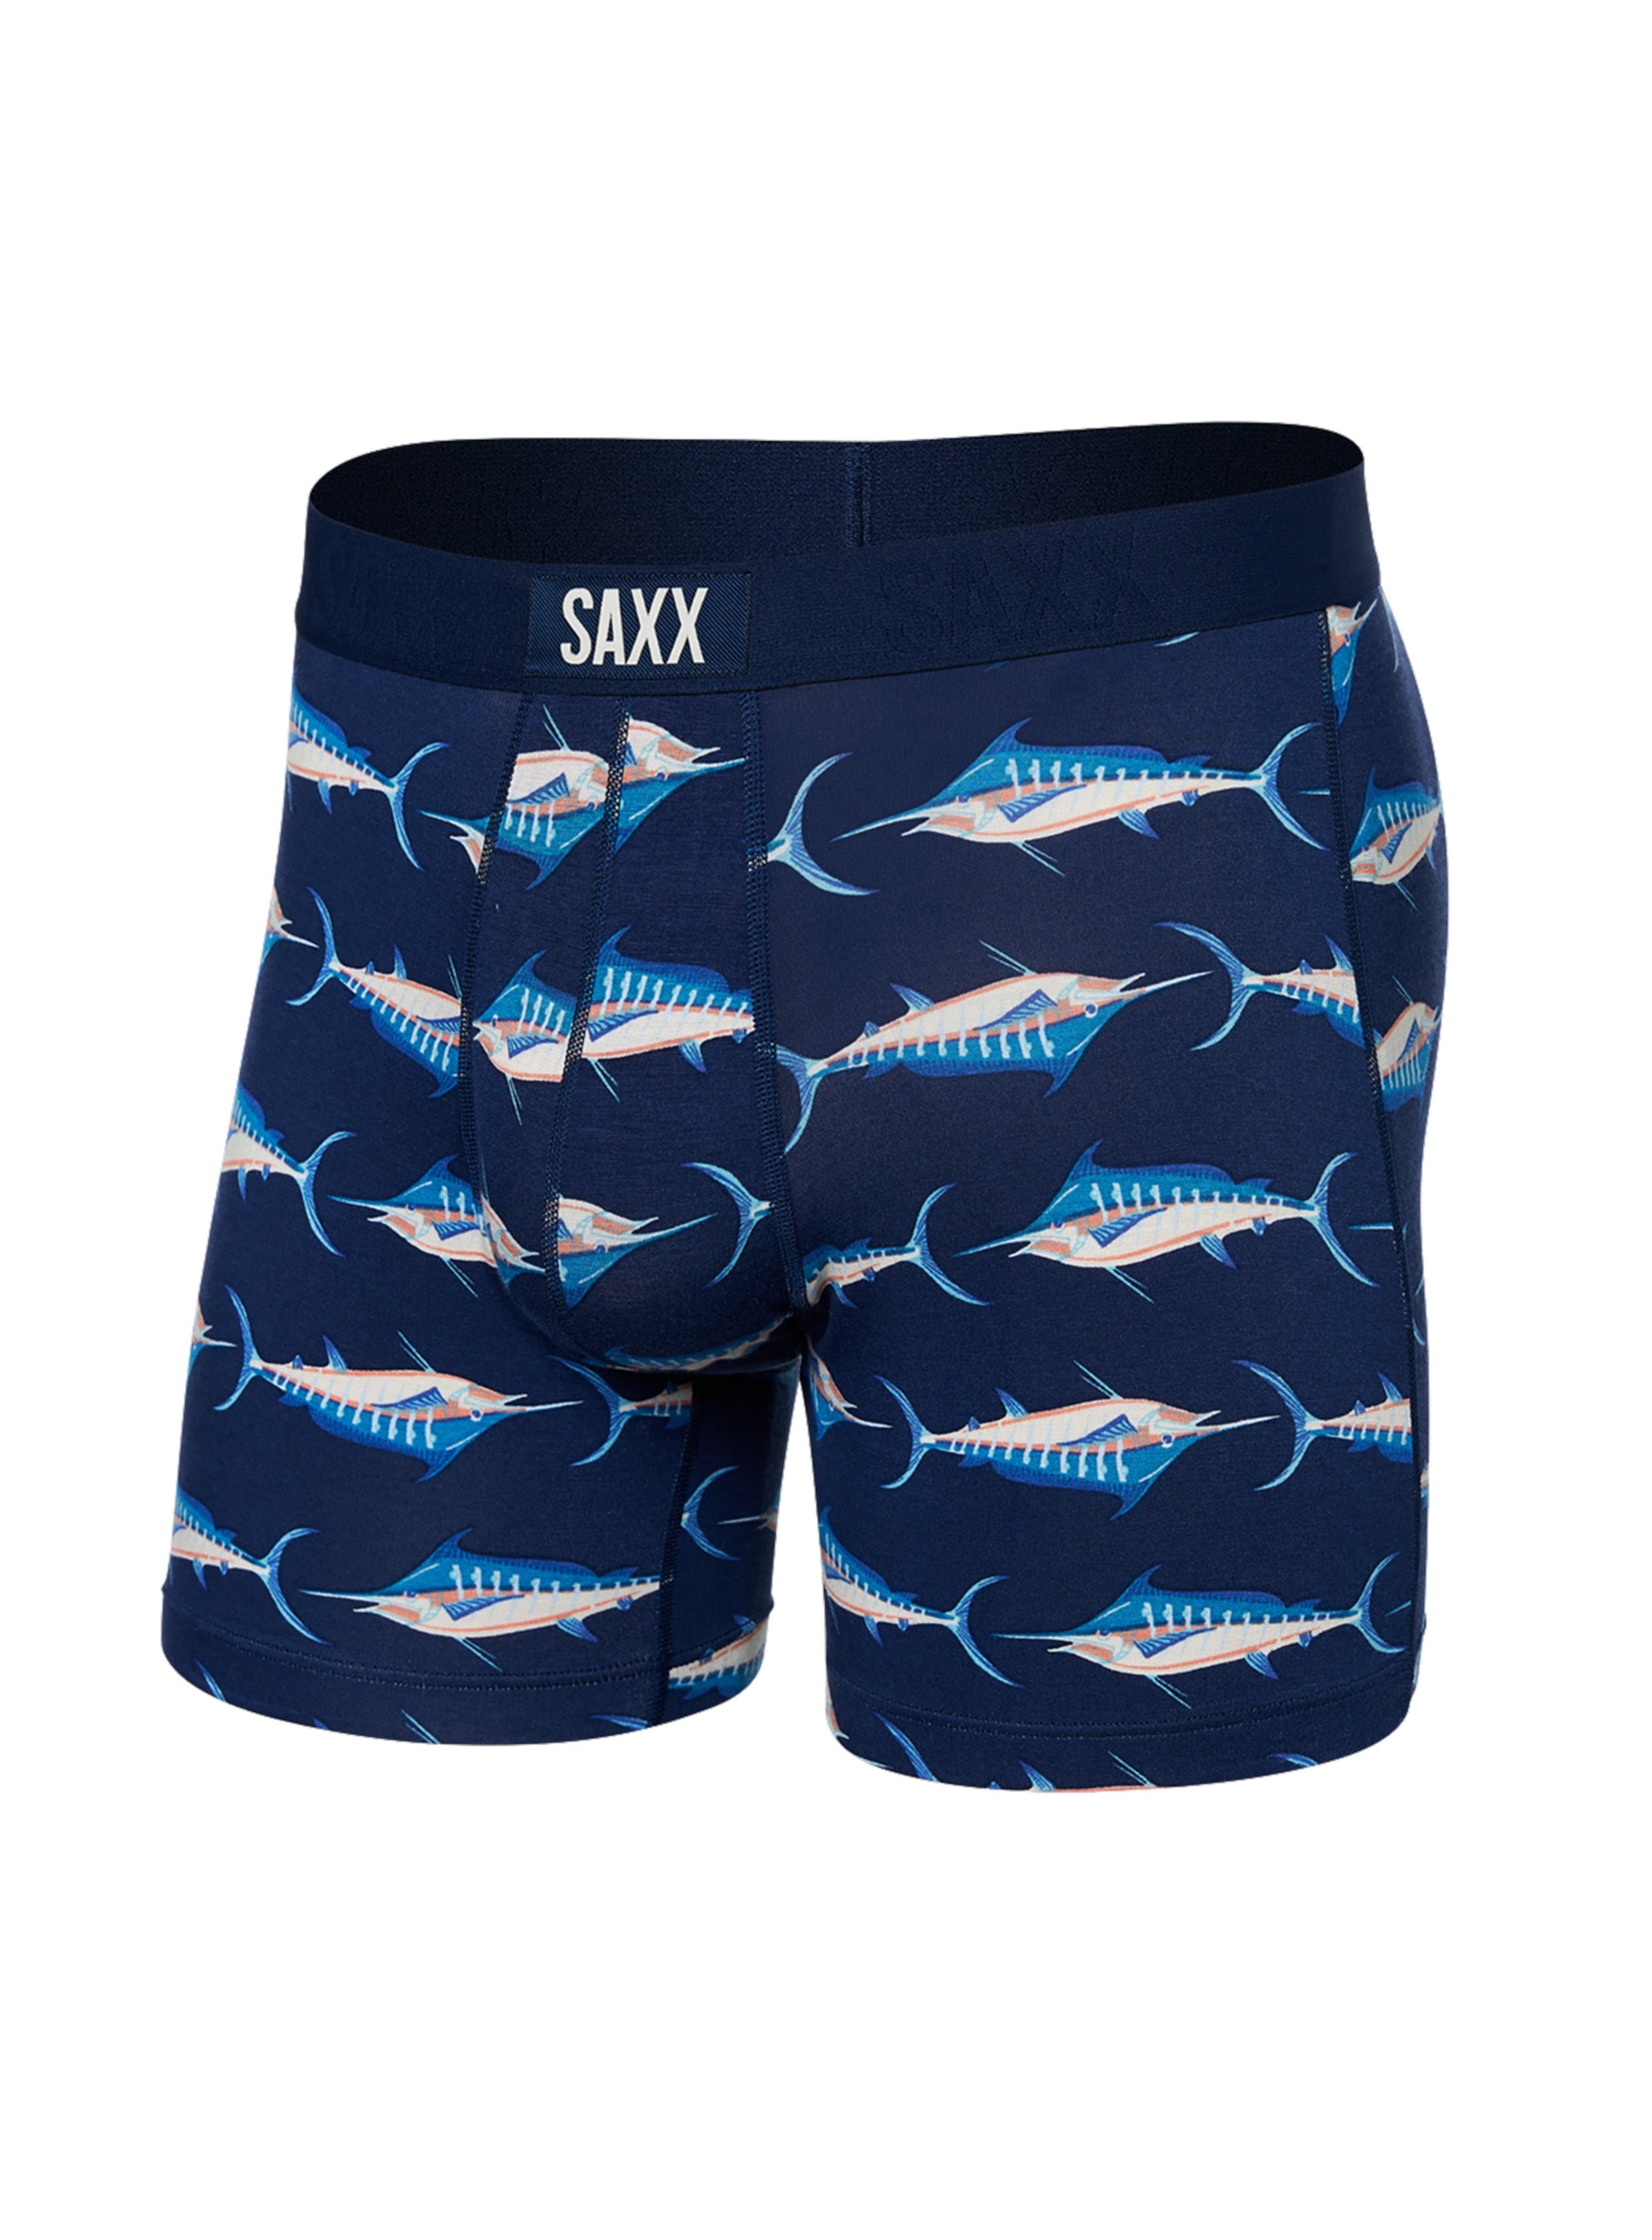 Saxx Underwear Sale